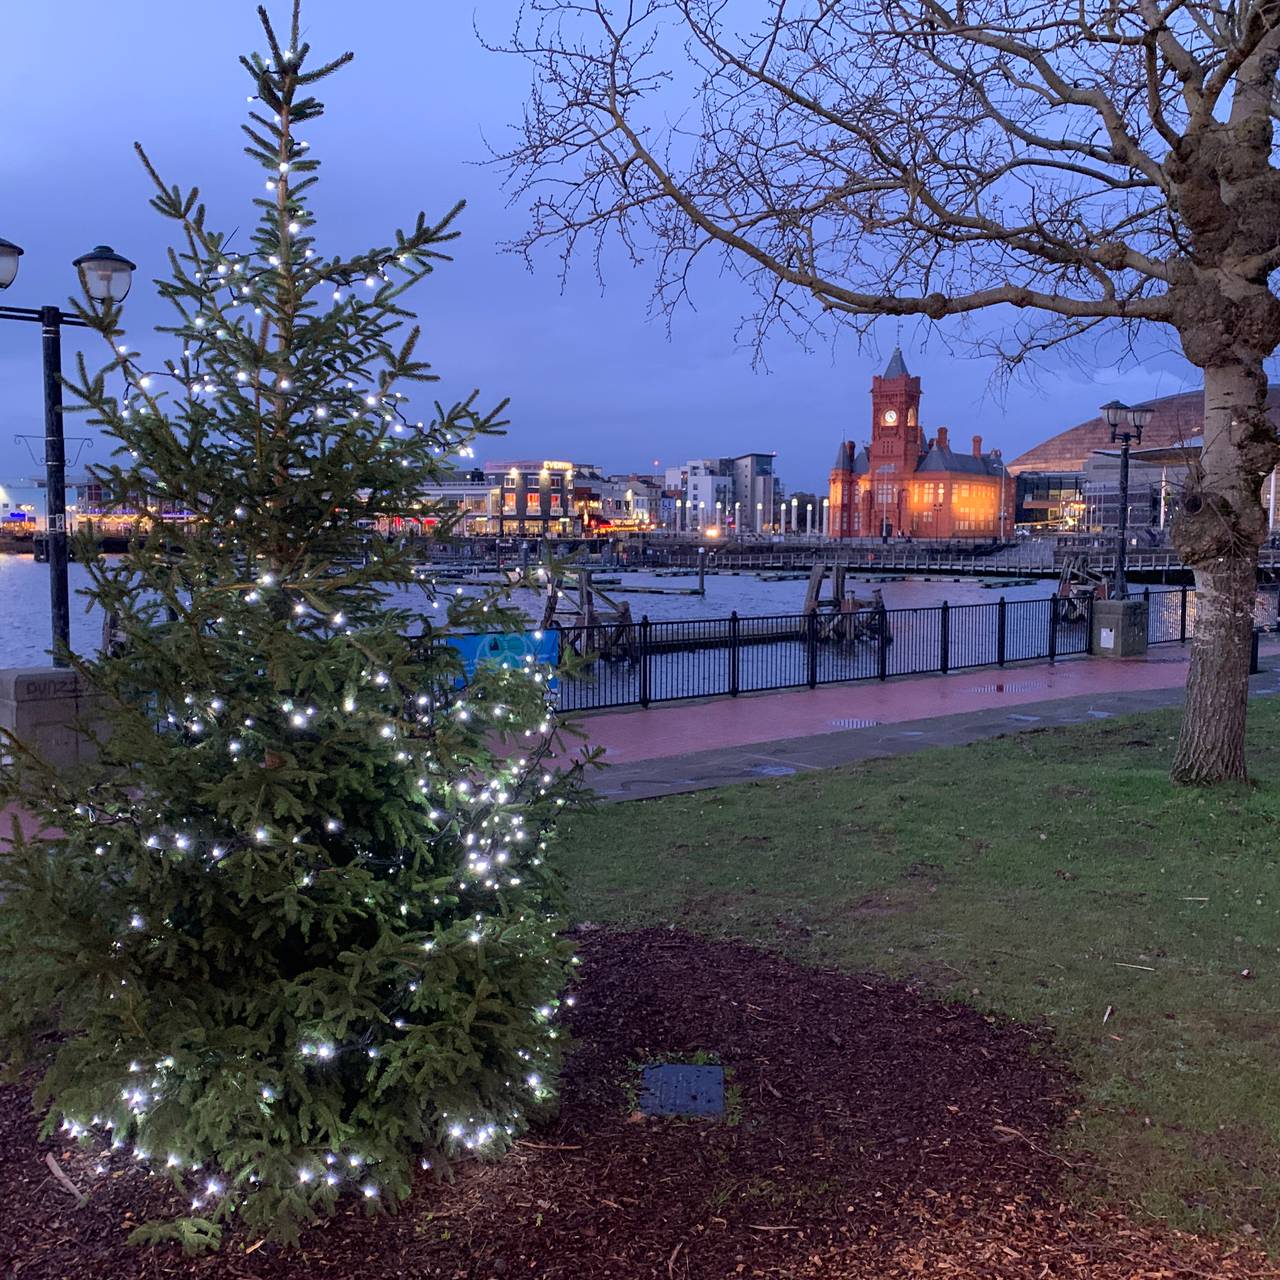 Det norske juletreet i Cardiff slik det så ut i julen 2019